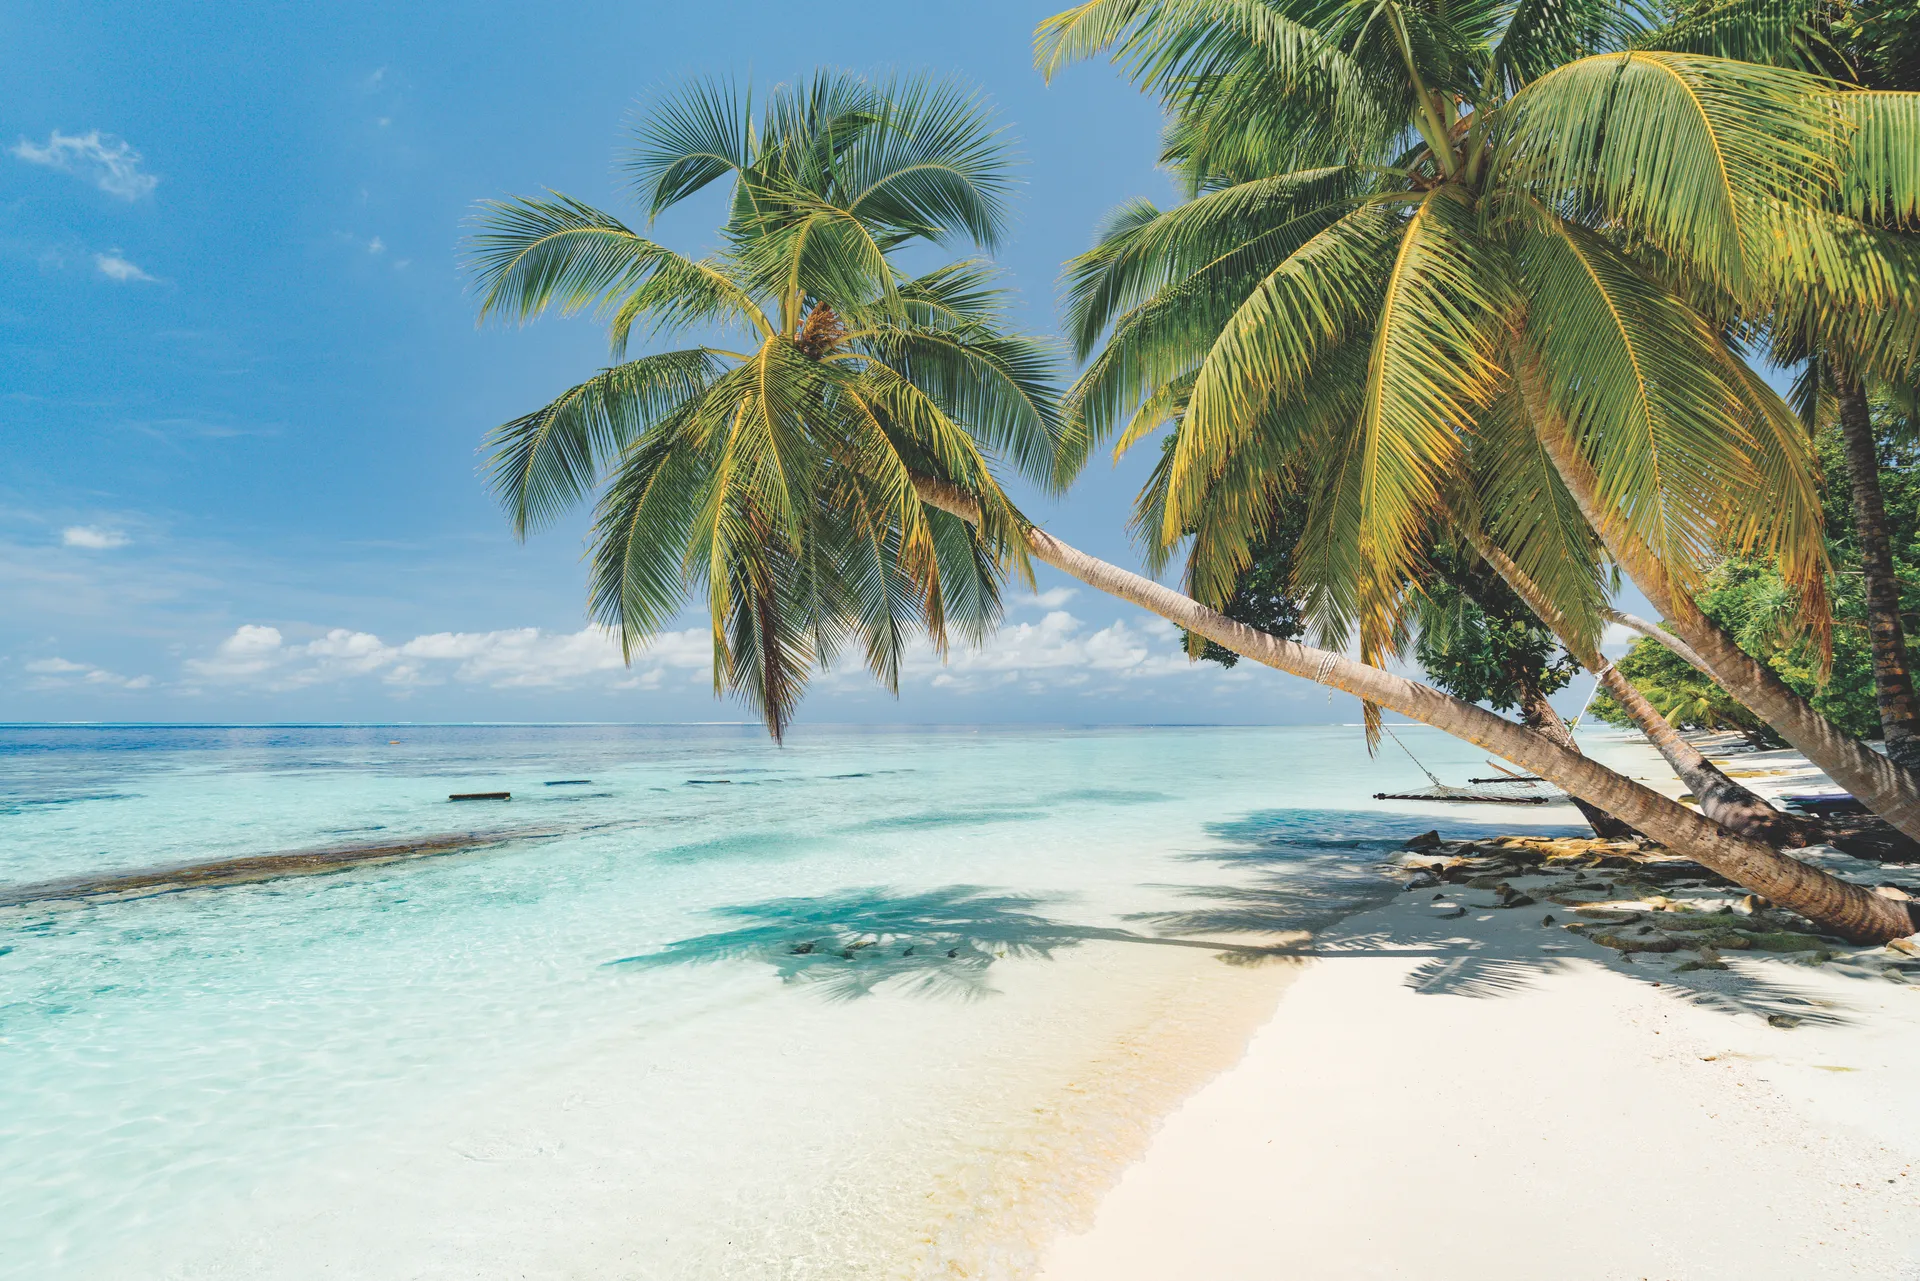 Op vakantie naar de Malediven? Boek nu je hotel in de Malediven met Neckermann. Scherpe prijzen, beste kwaliteit.